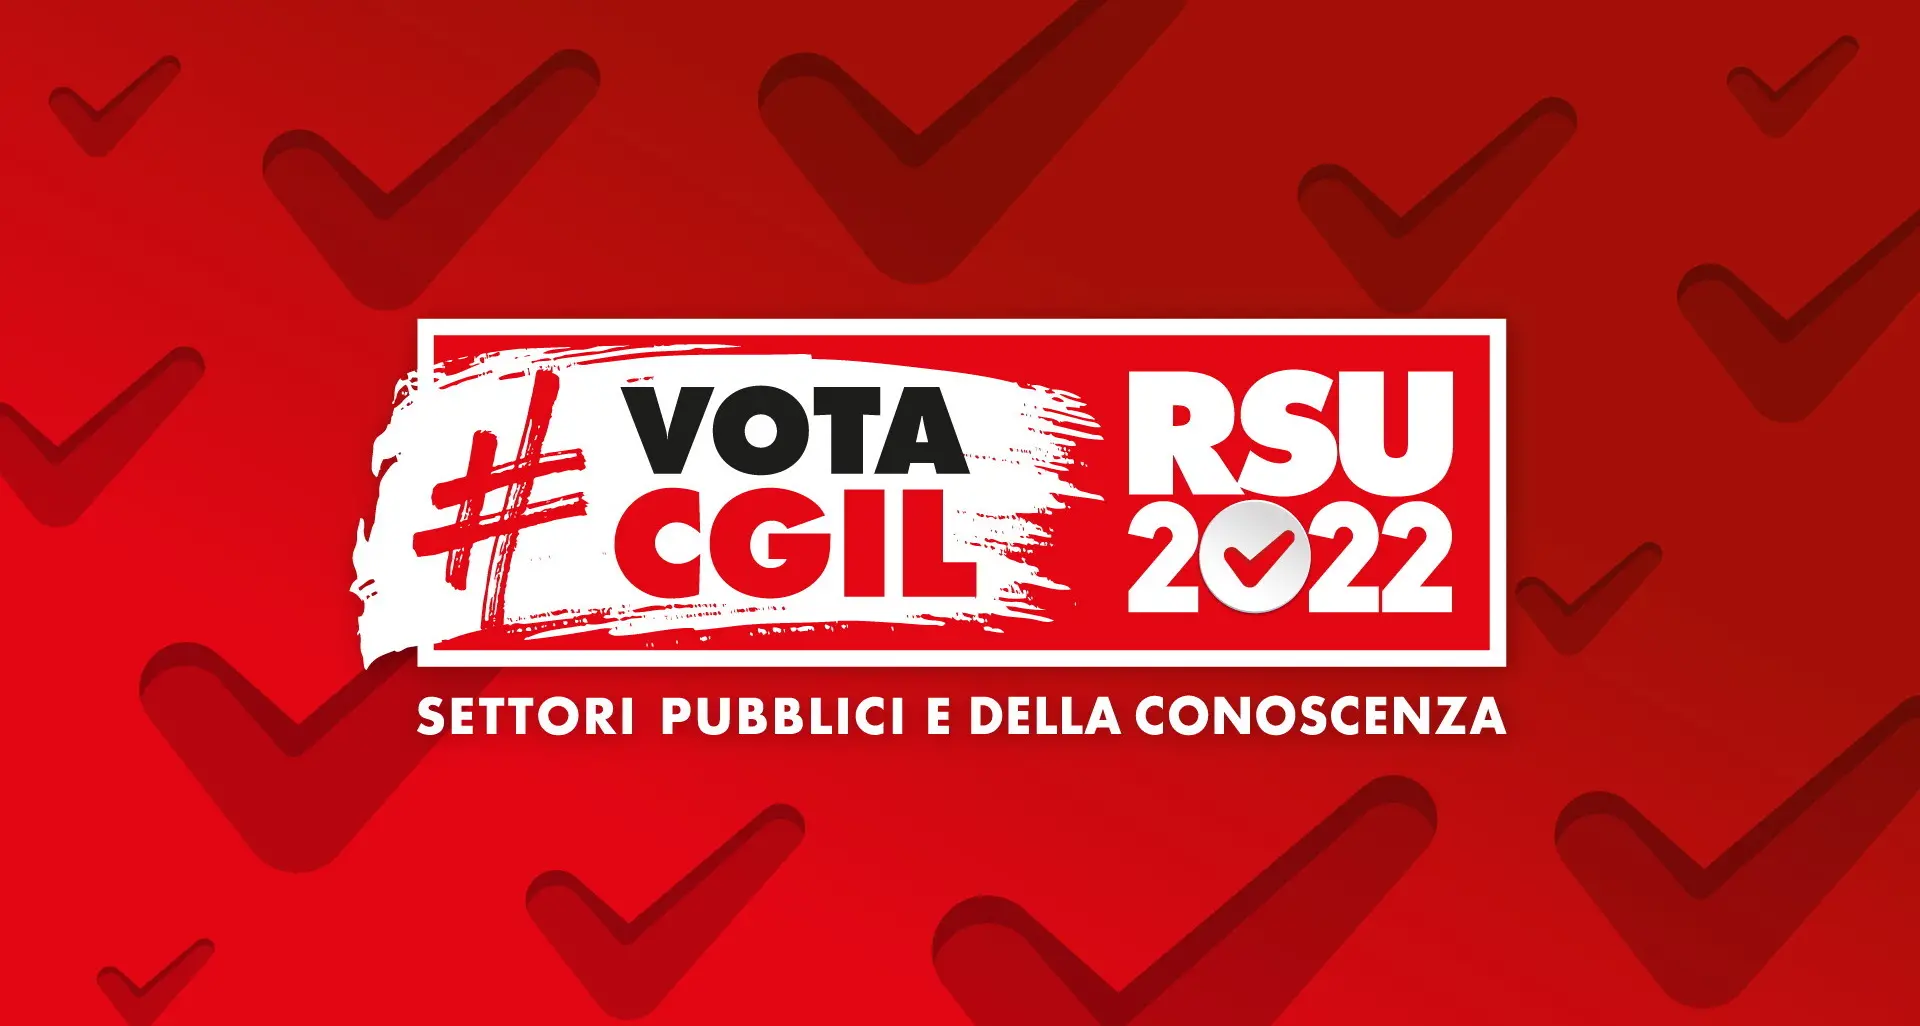 RSU 2022 #VotaCGIL, materiali grafici